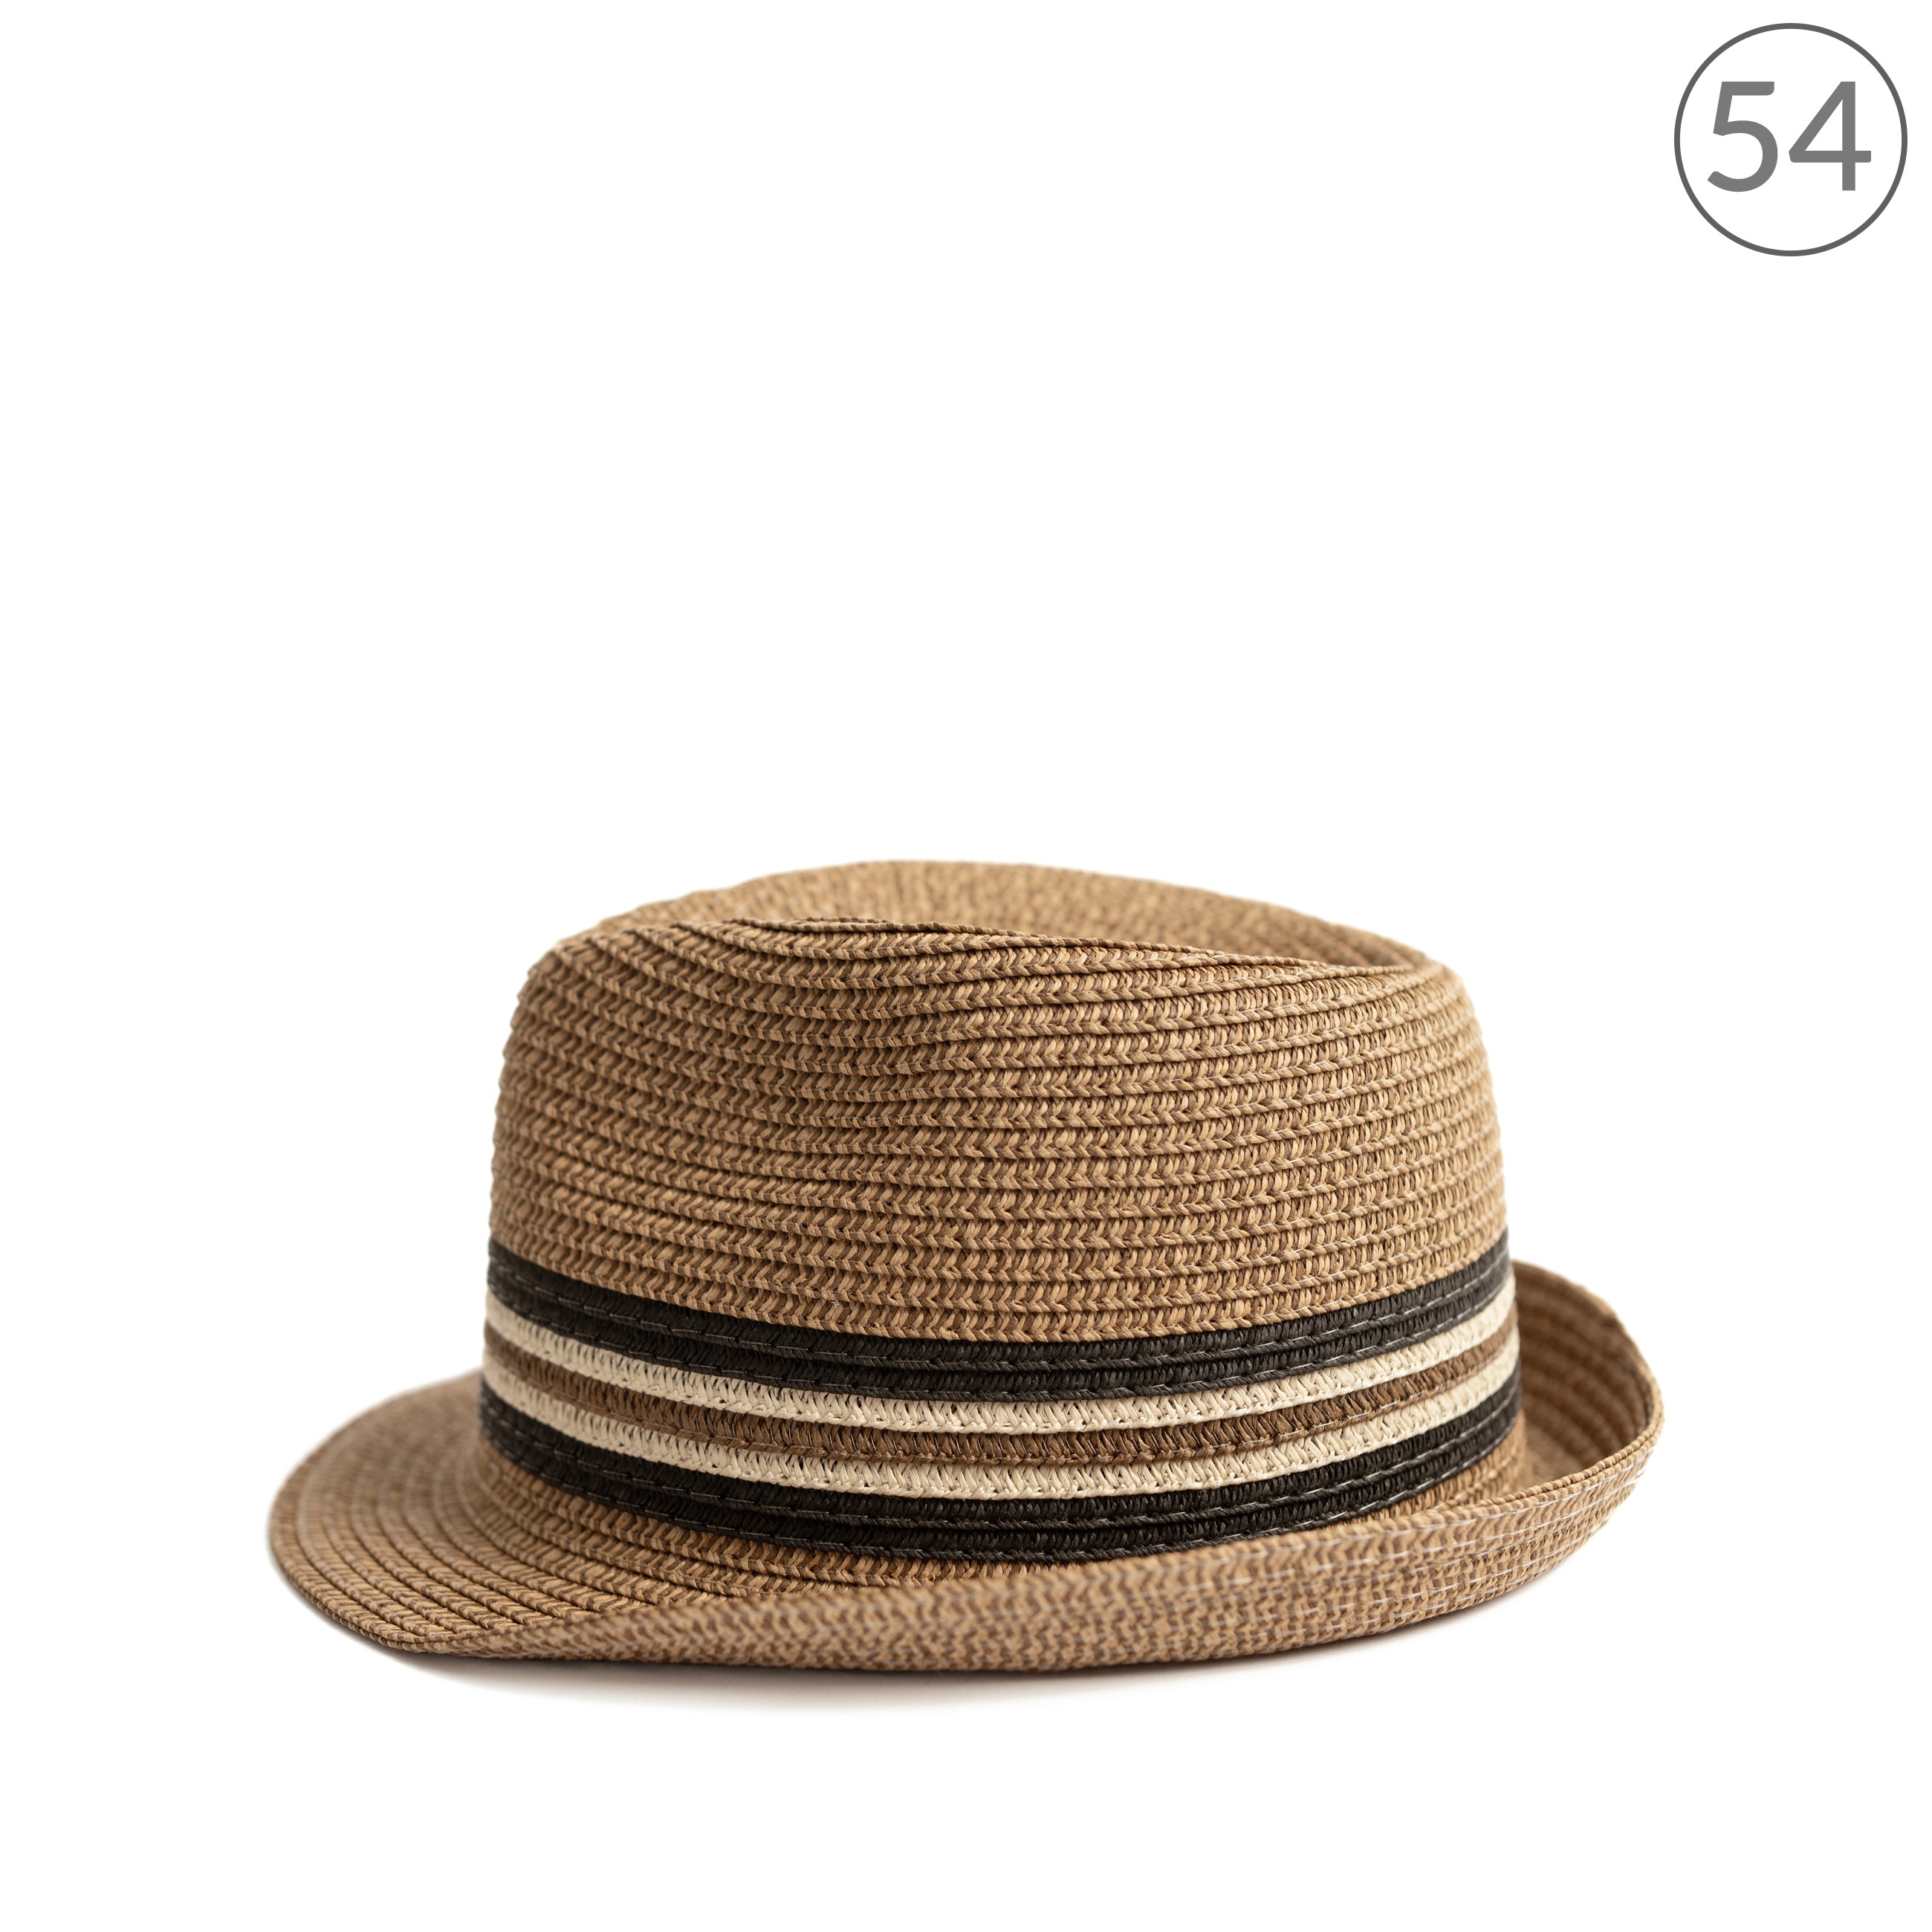 Chlapecký slaměný klobouk cz24116 Barva: hnědá, Velikost: 54